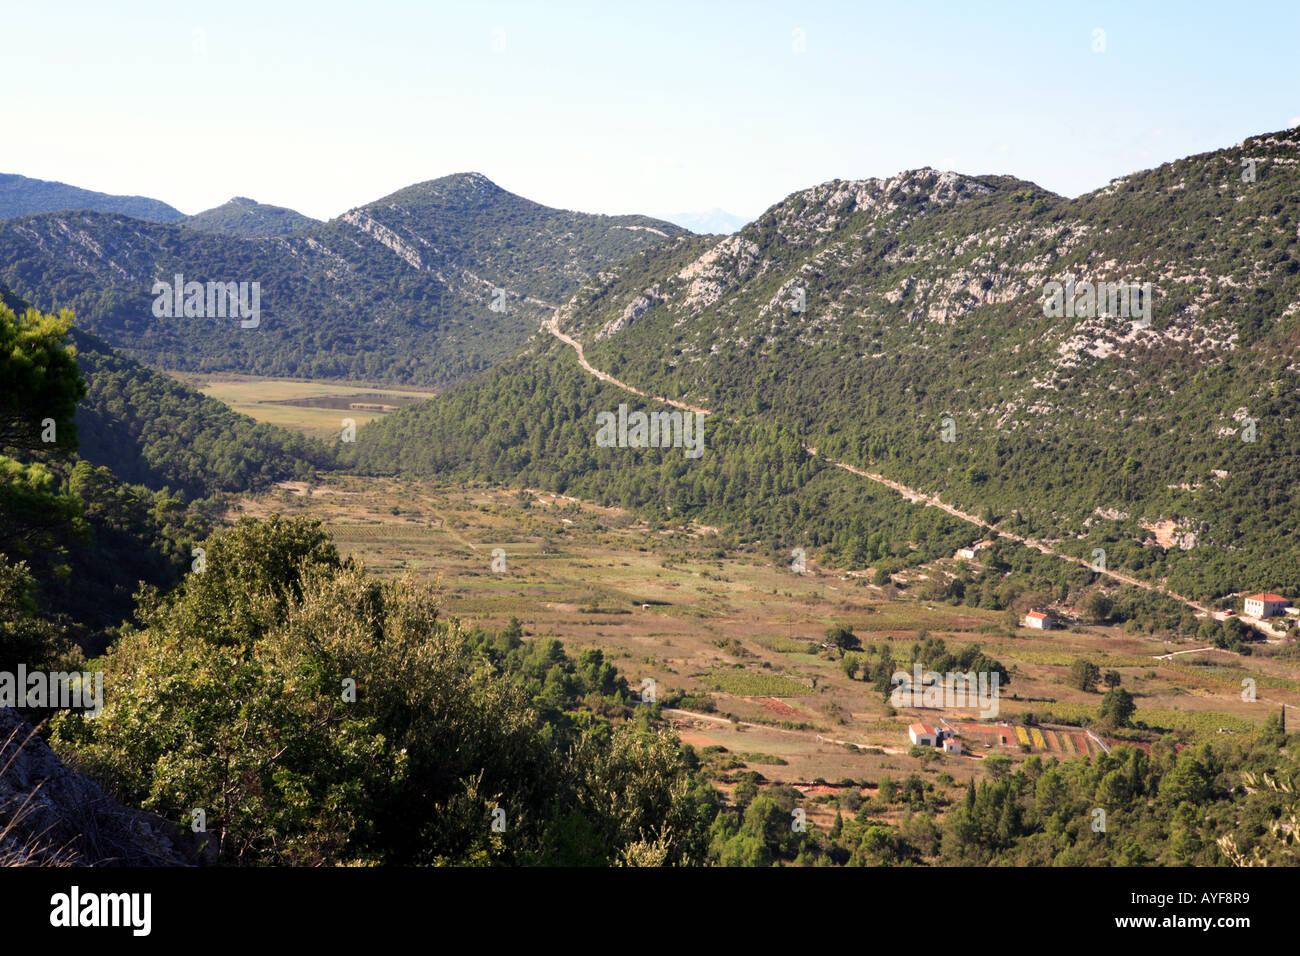 Blato, eines der größten Dörfer bekannt für seine hervorragenden Wein in Mljet, Kroatien Stockfoto